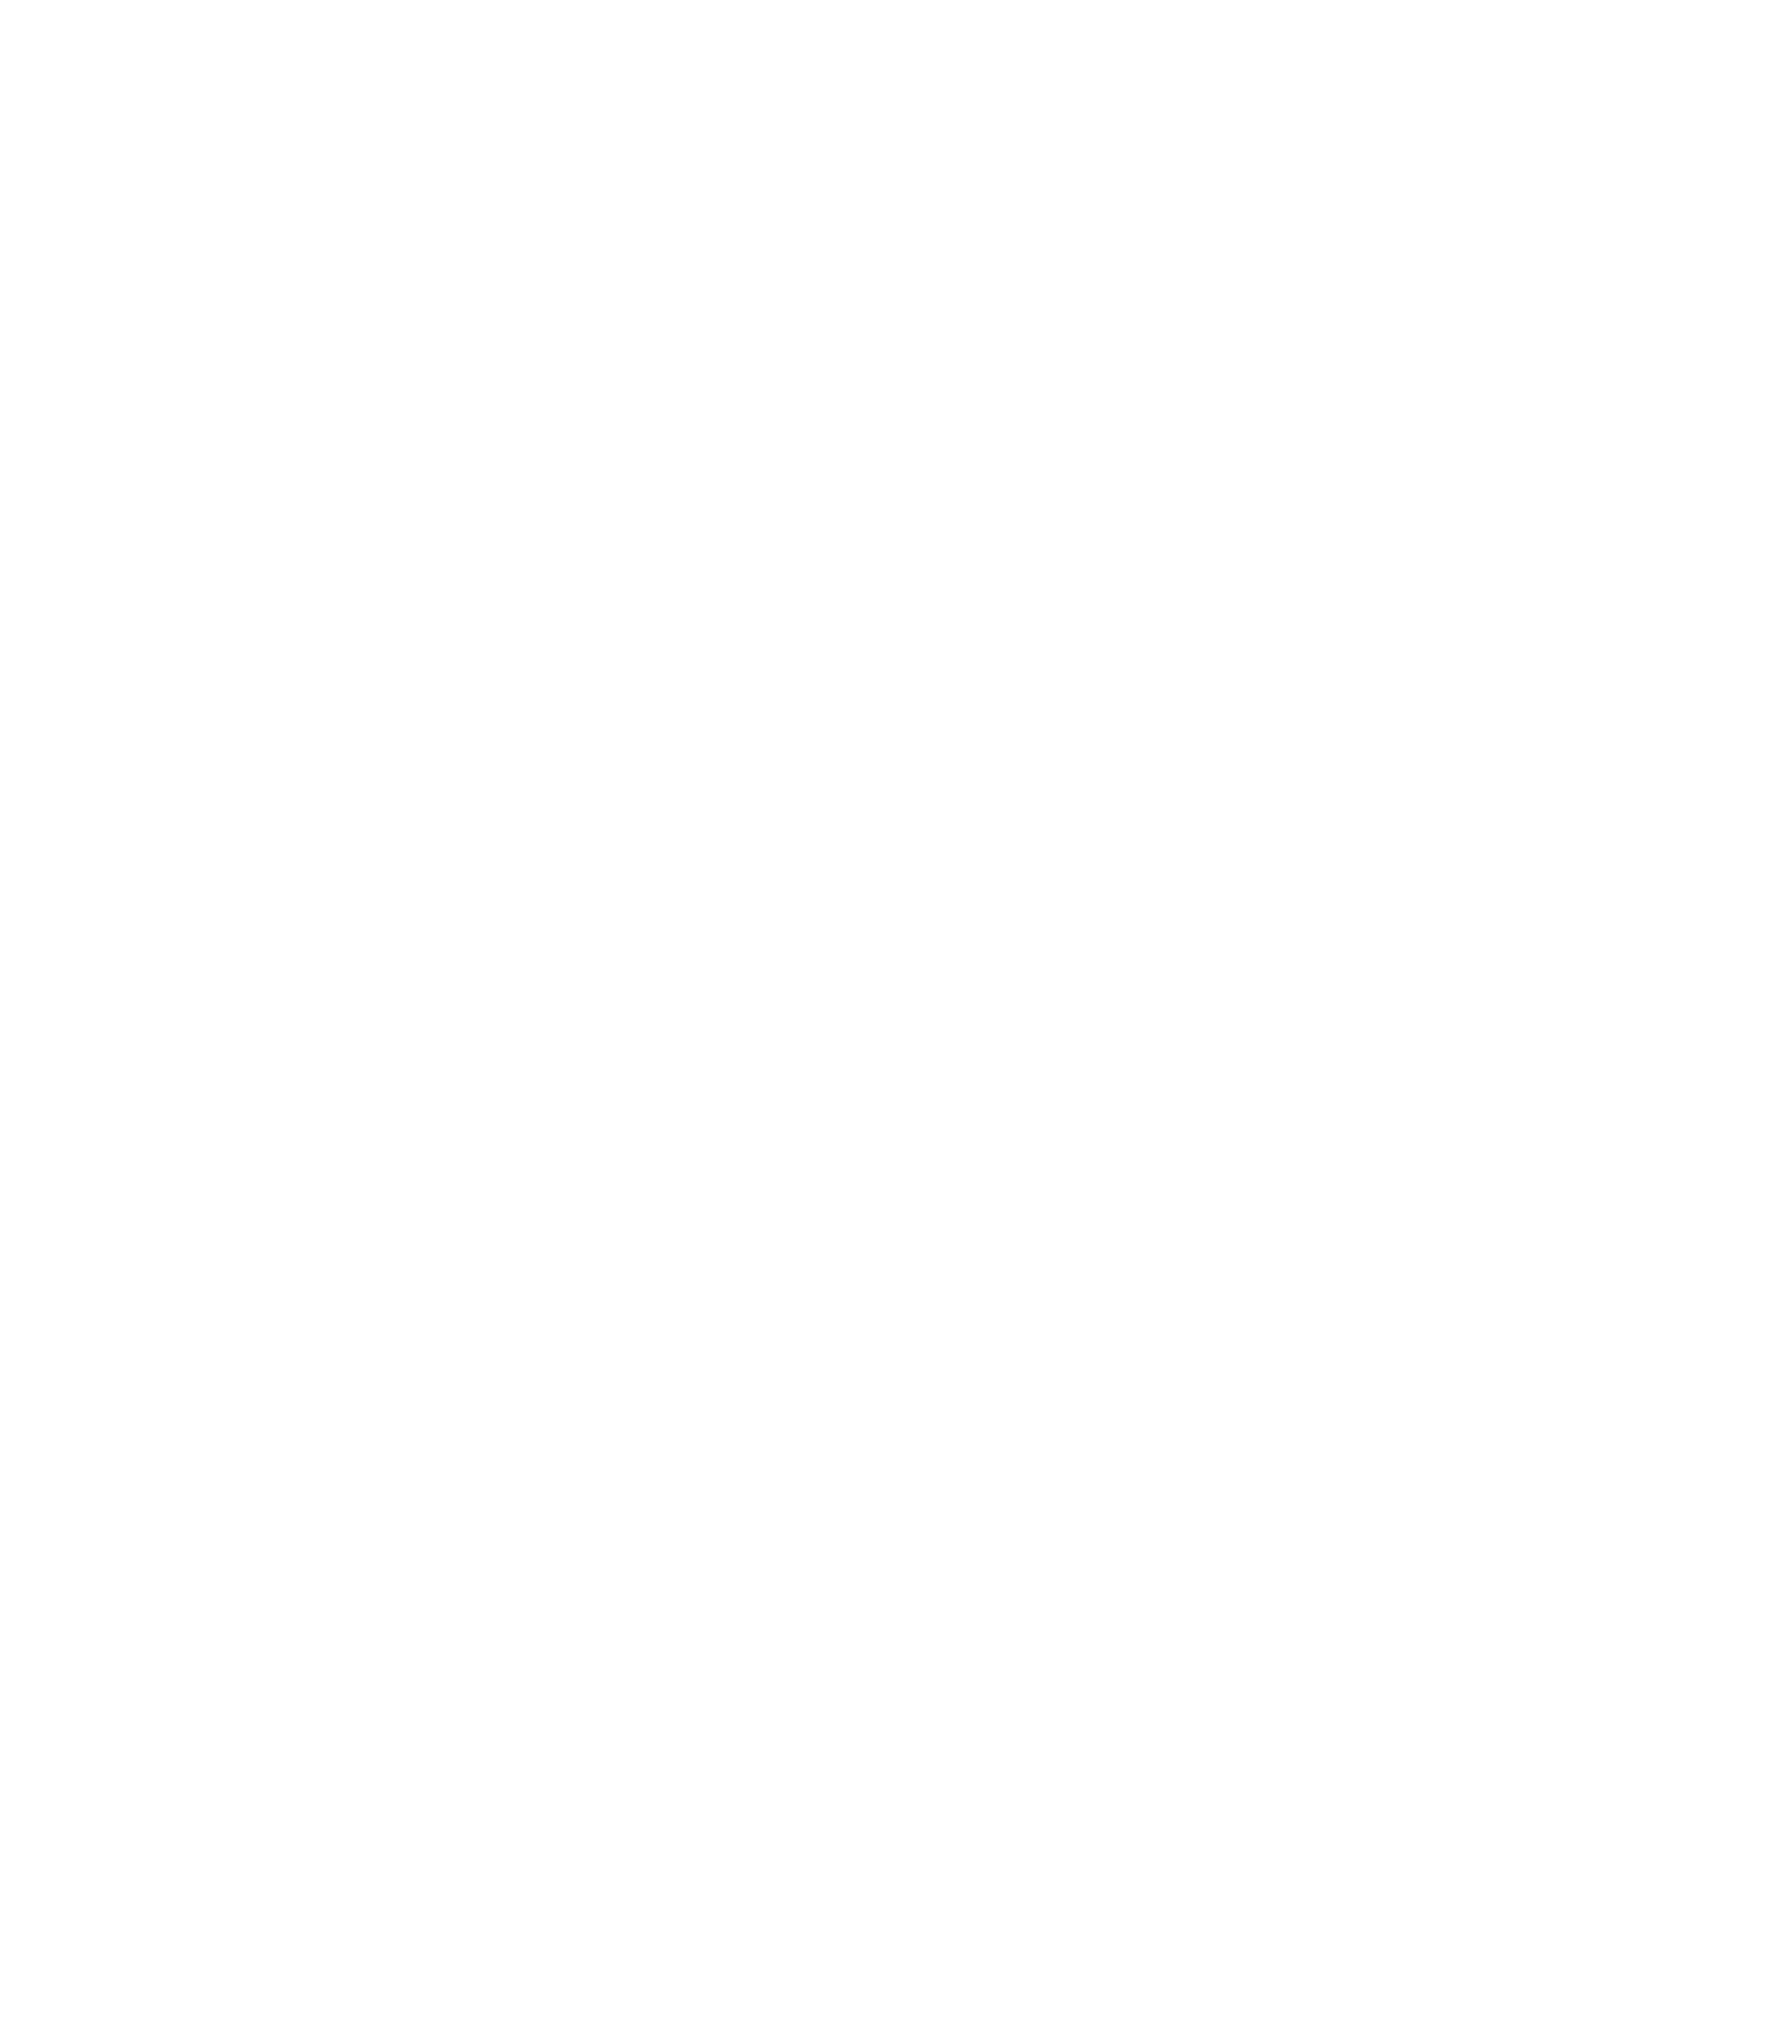 Vattanac Golf Resort